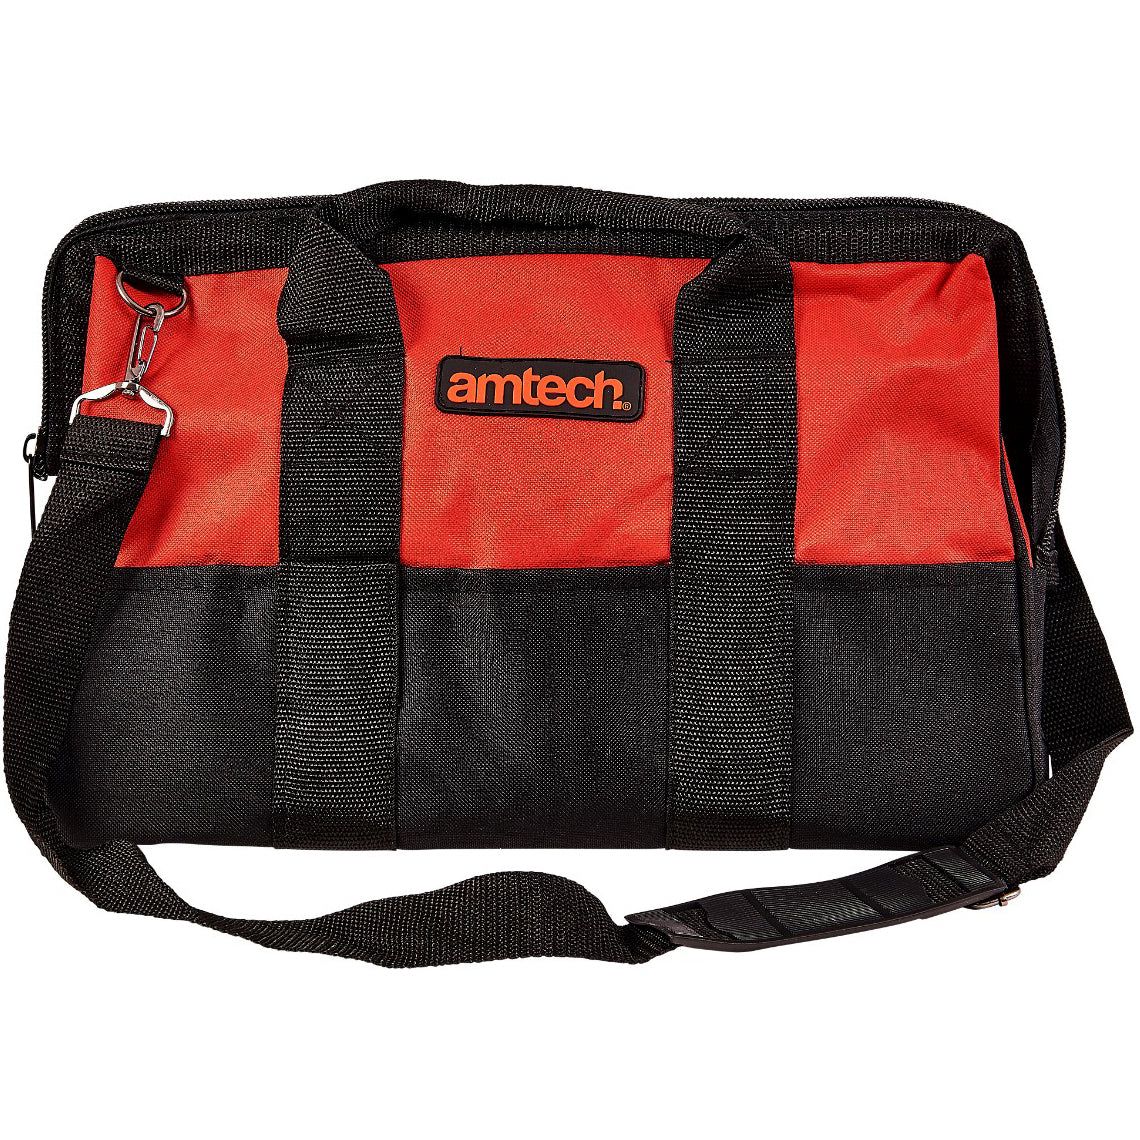 Amtech 22 Pocket Contractors Holdall Tool Bag